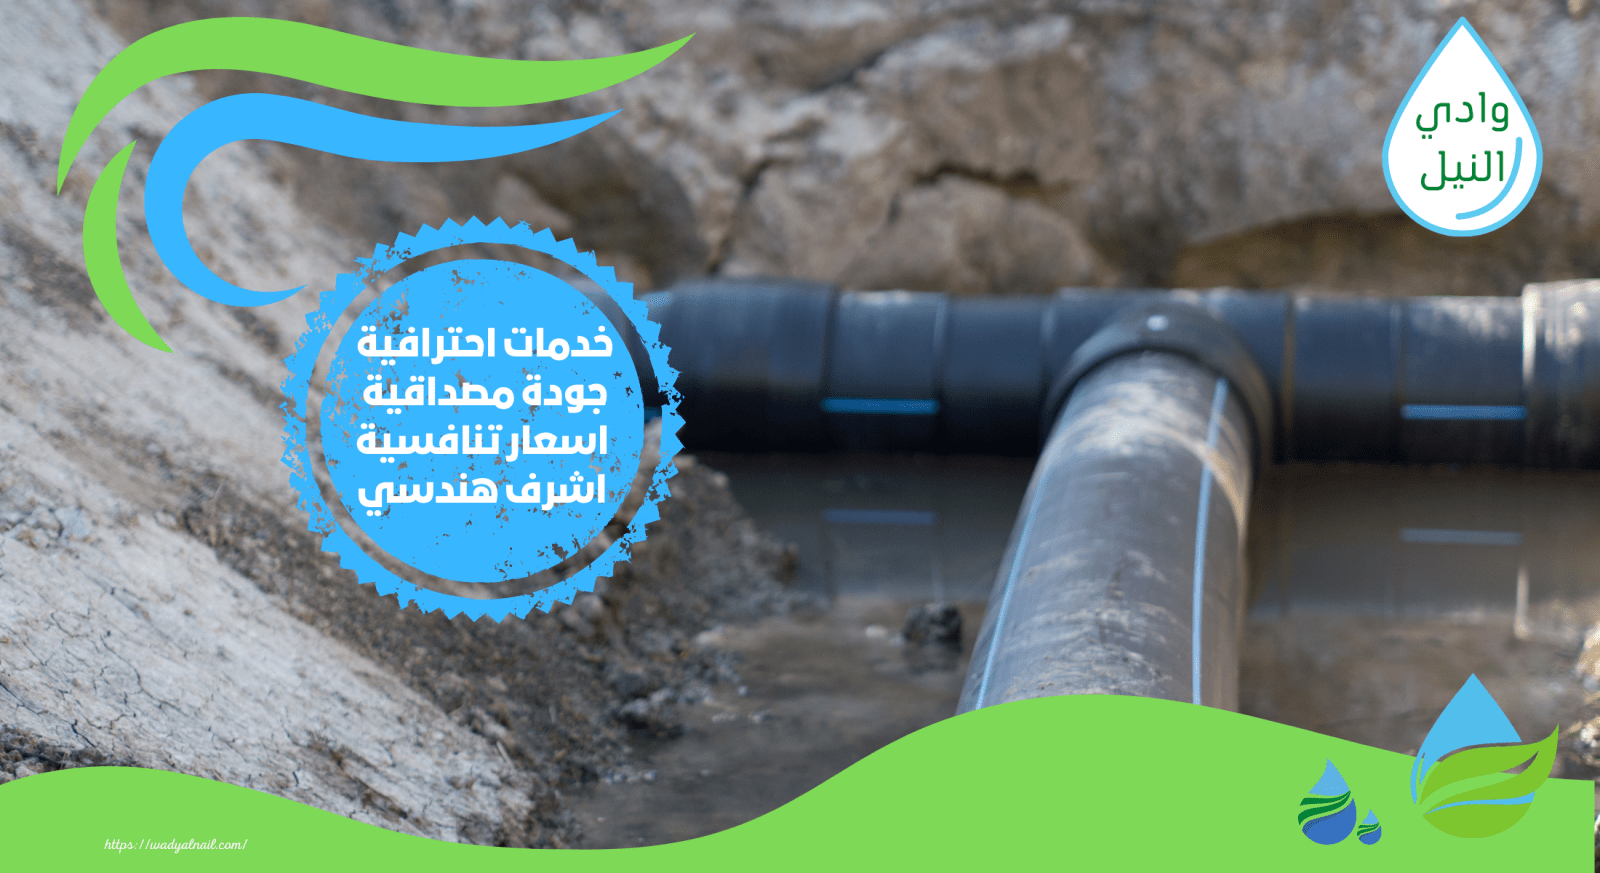 جهاز كشف تسرب المياه تحت البلاط في مصر